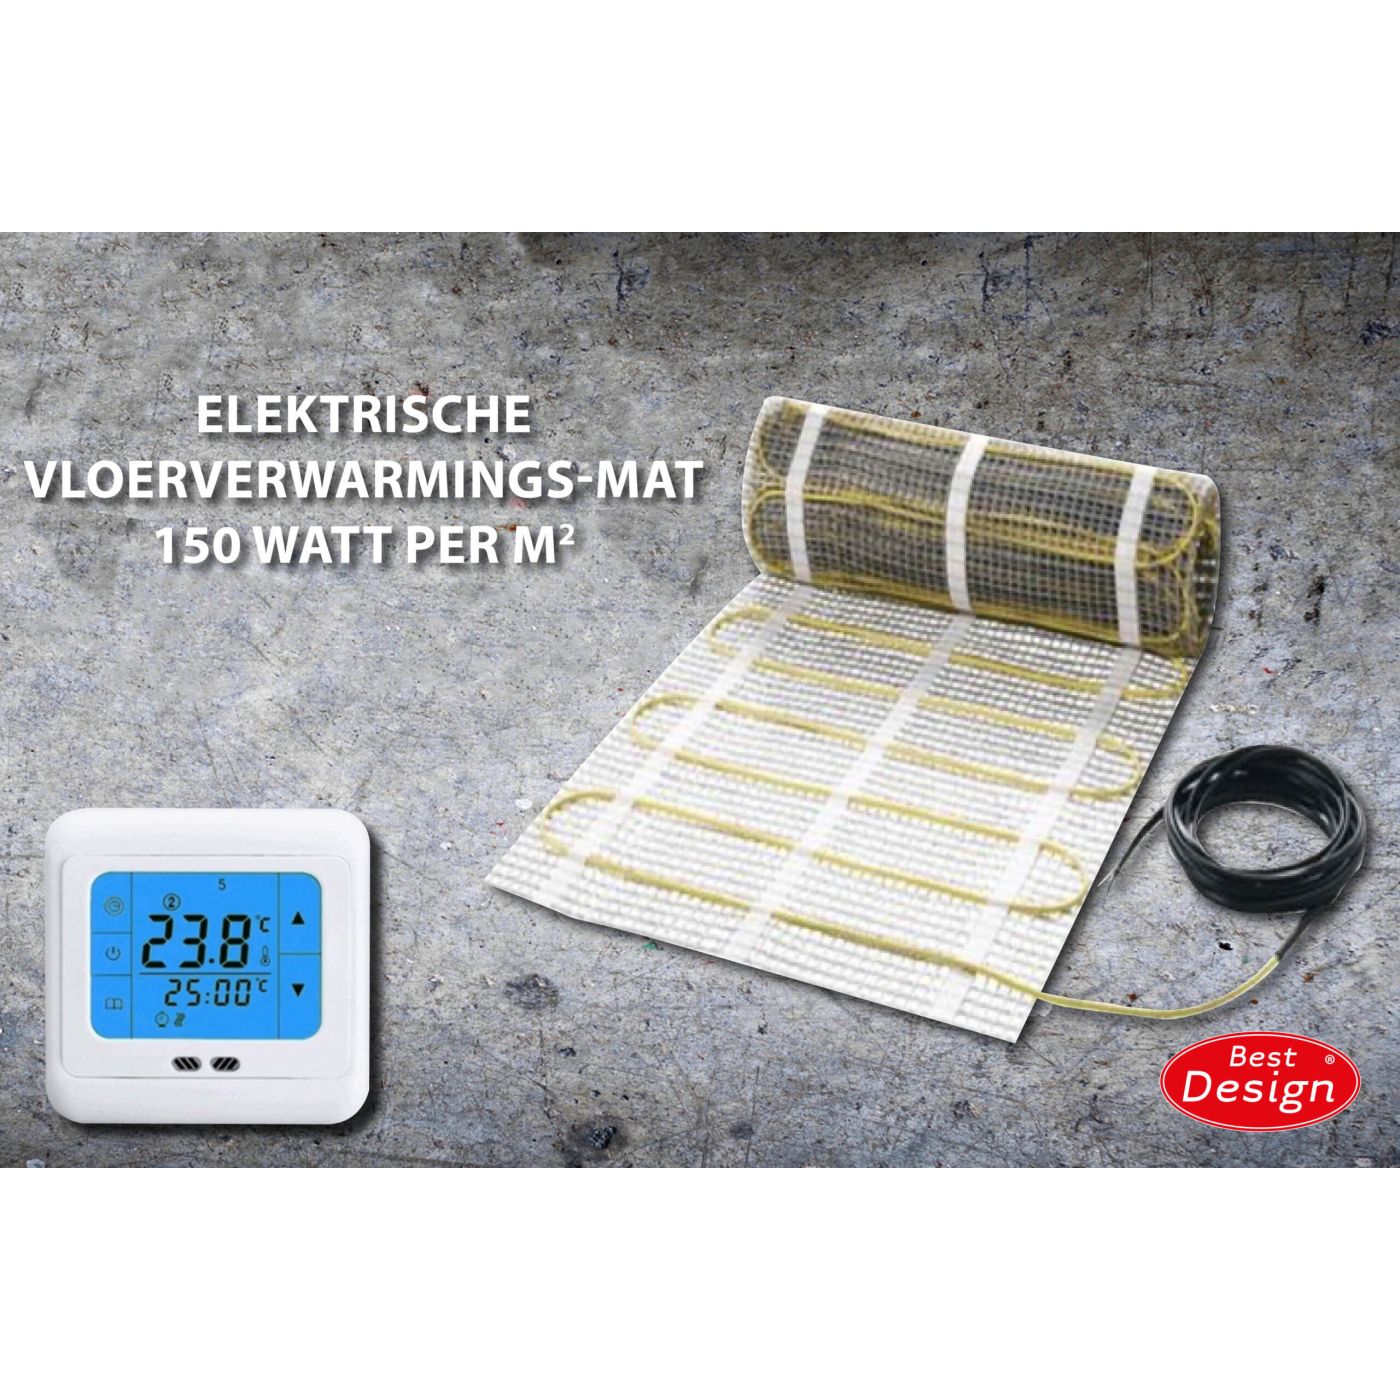 Best Design Comfort elektrische vloerverwarming mat 2.0m2